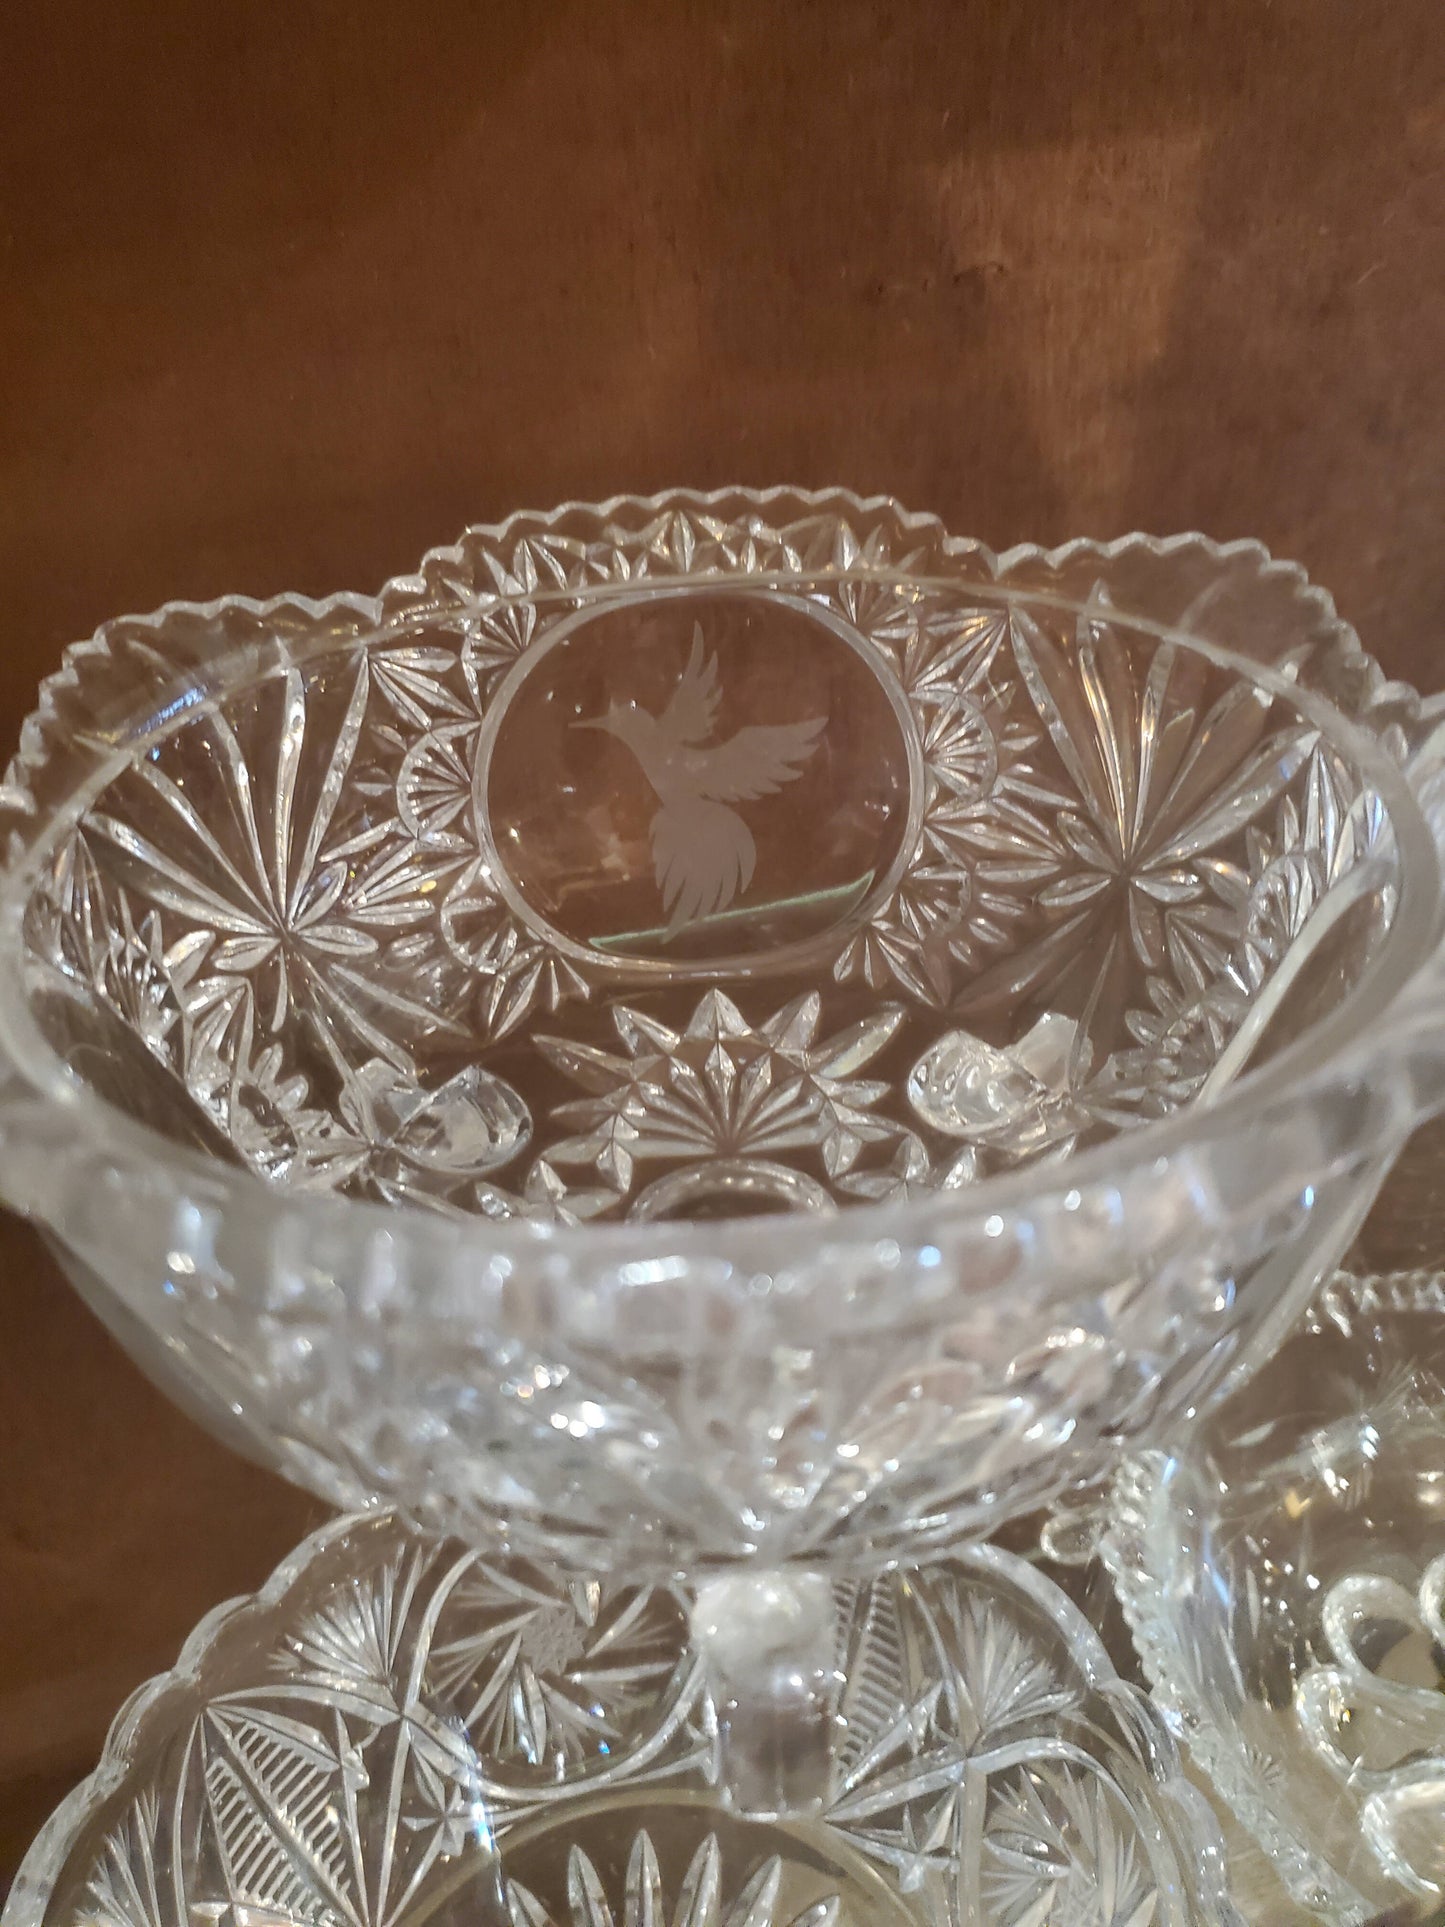 Vintage crystal serving bowl